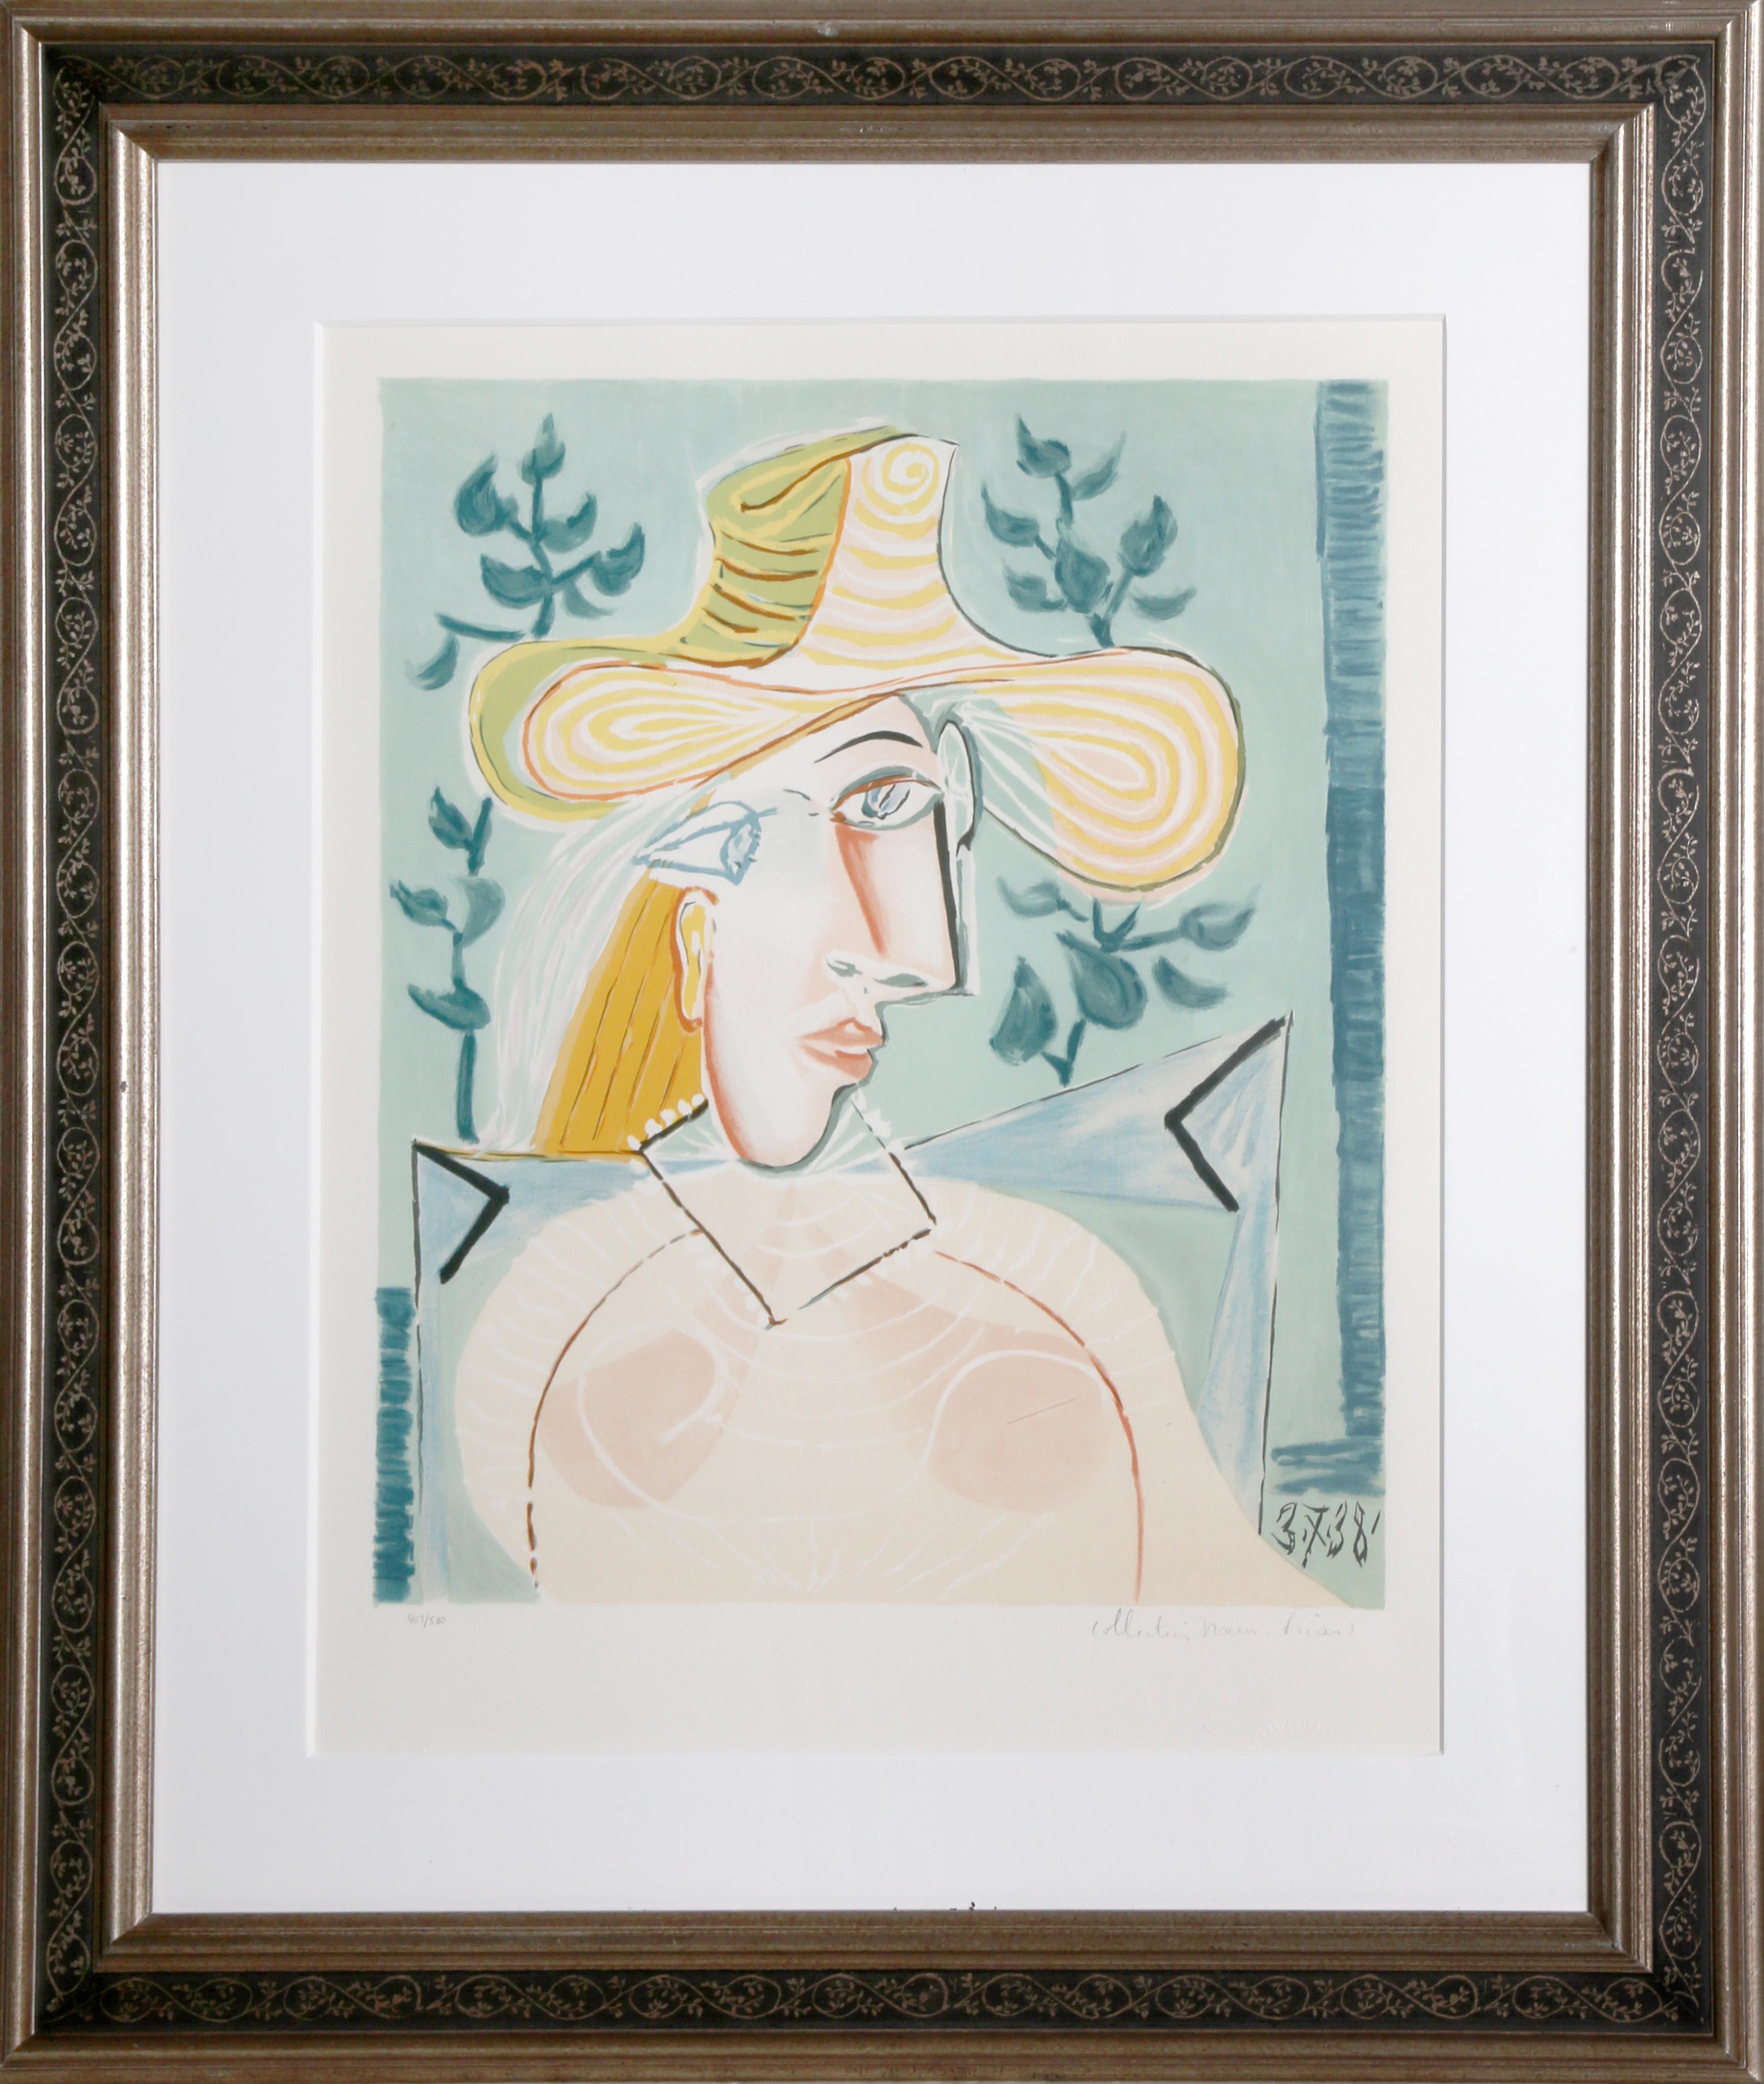 Une lithographie provenant de la Collection S de Marina Picasso d'après le tableau de Pablo Picasso "Femme à la Collerette".  La peinture originale a été achevée en 1938. Dans les années 1970, après la mort de Picasso, Marina Picasso, sa